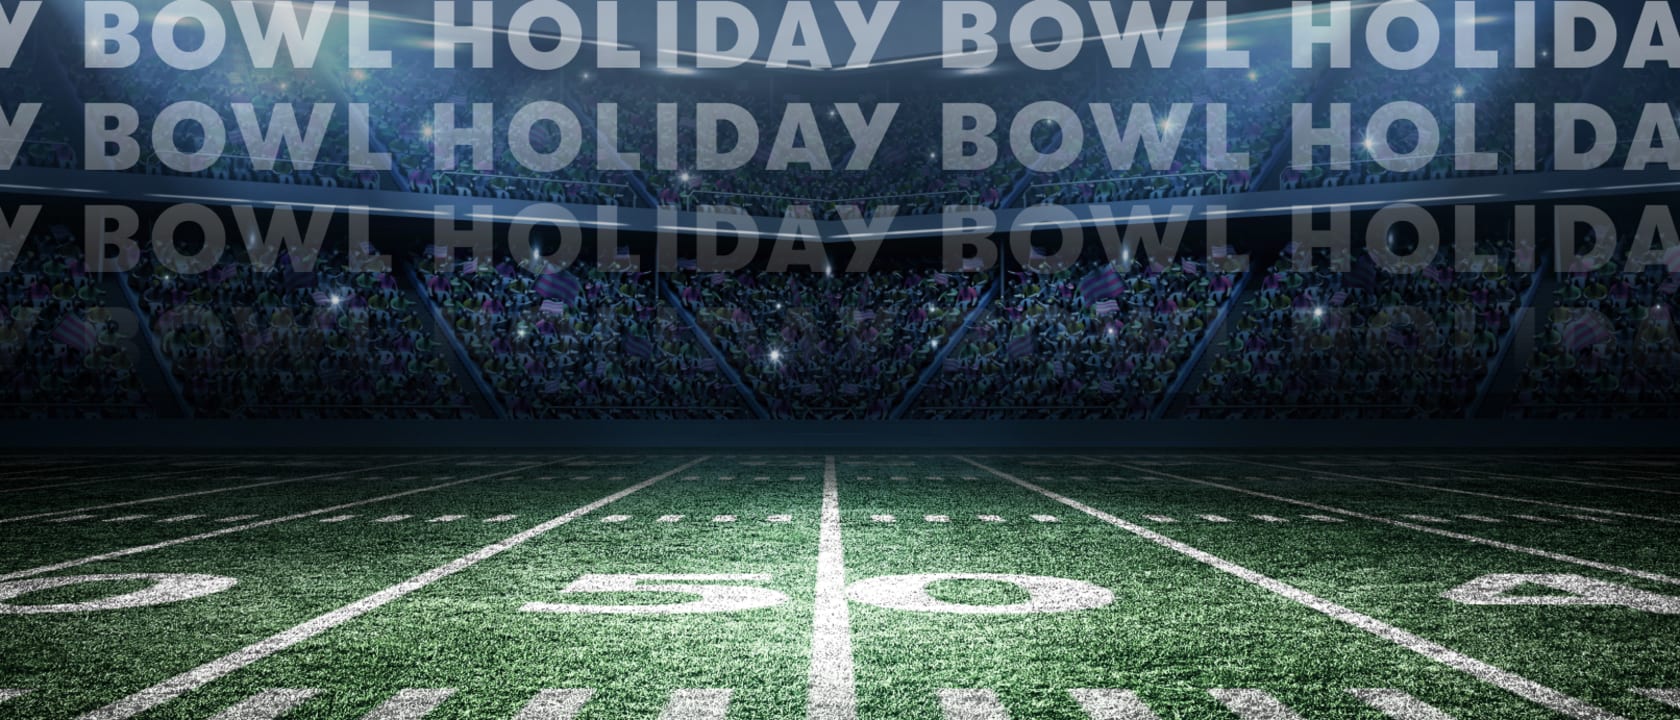 Holiday Bowl